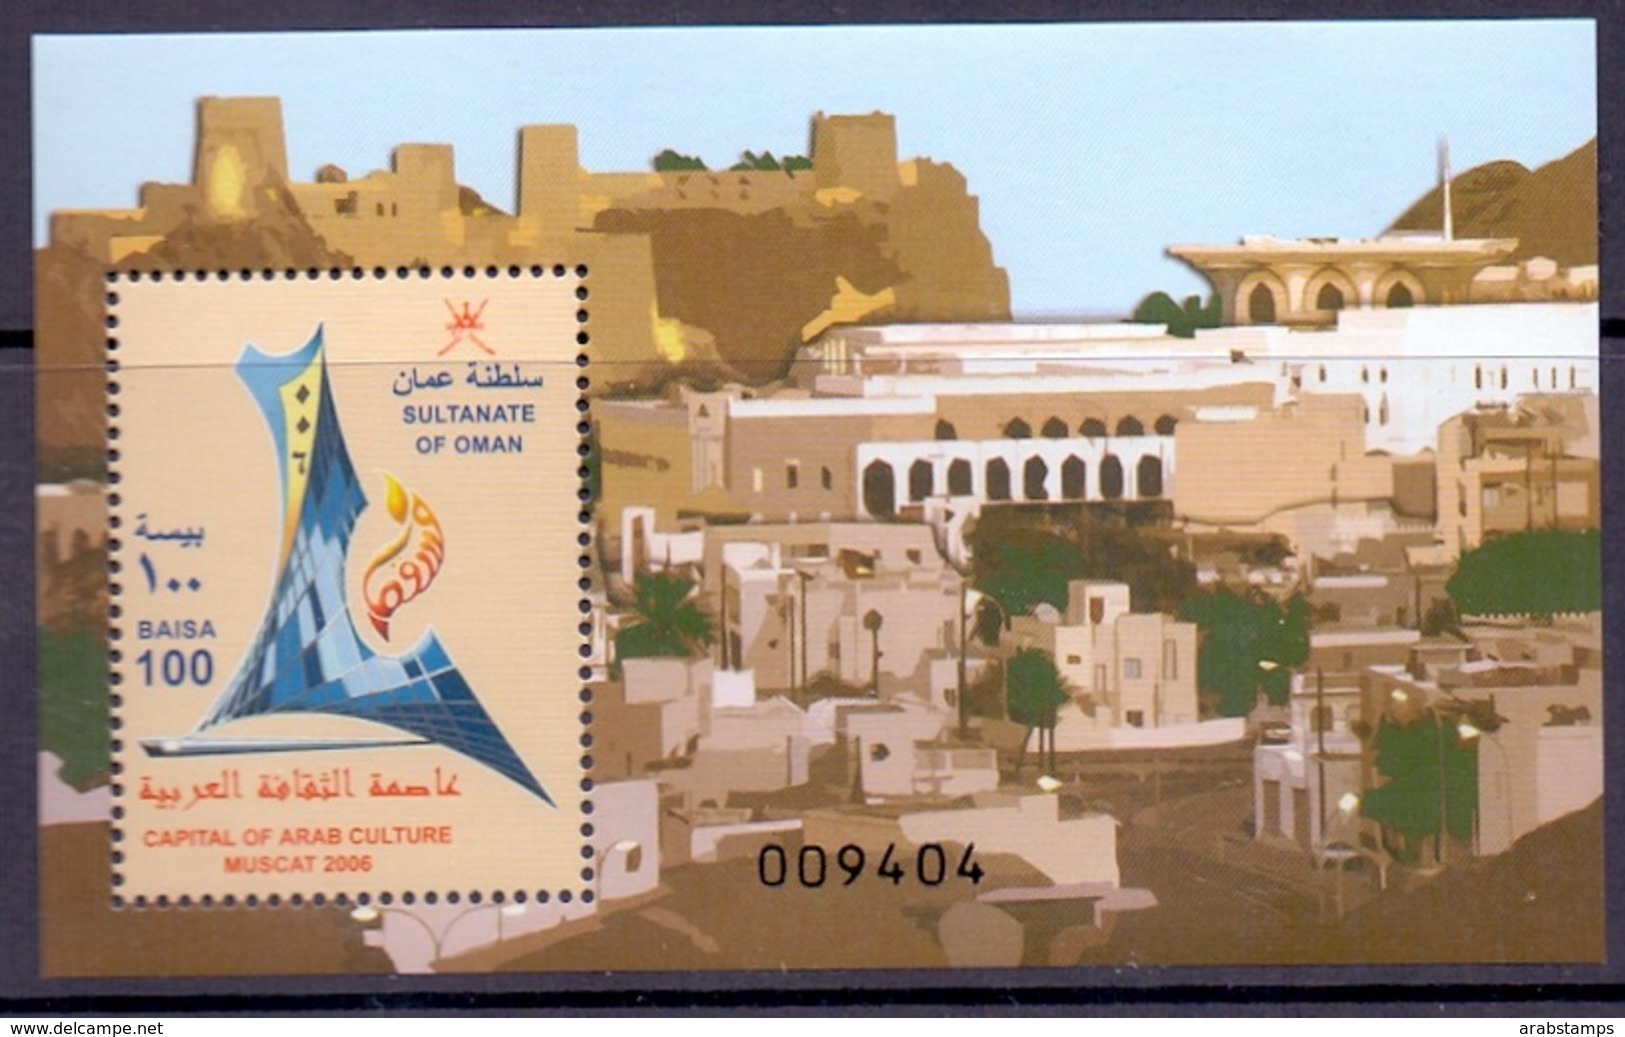 2006 OMAN Muscat Is The Capital Of Arab Culture Souvenir Sheets MNH - Oman